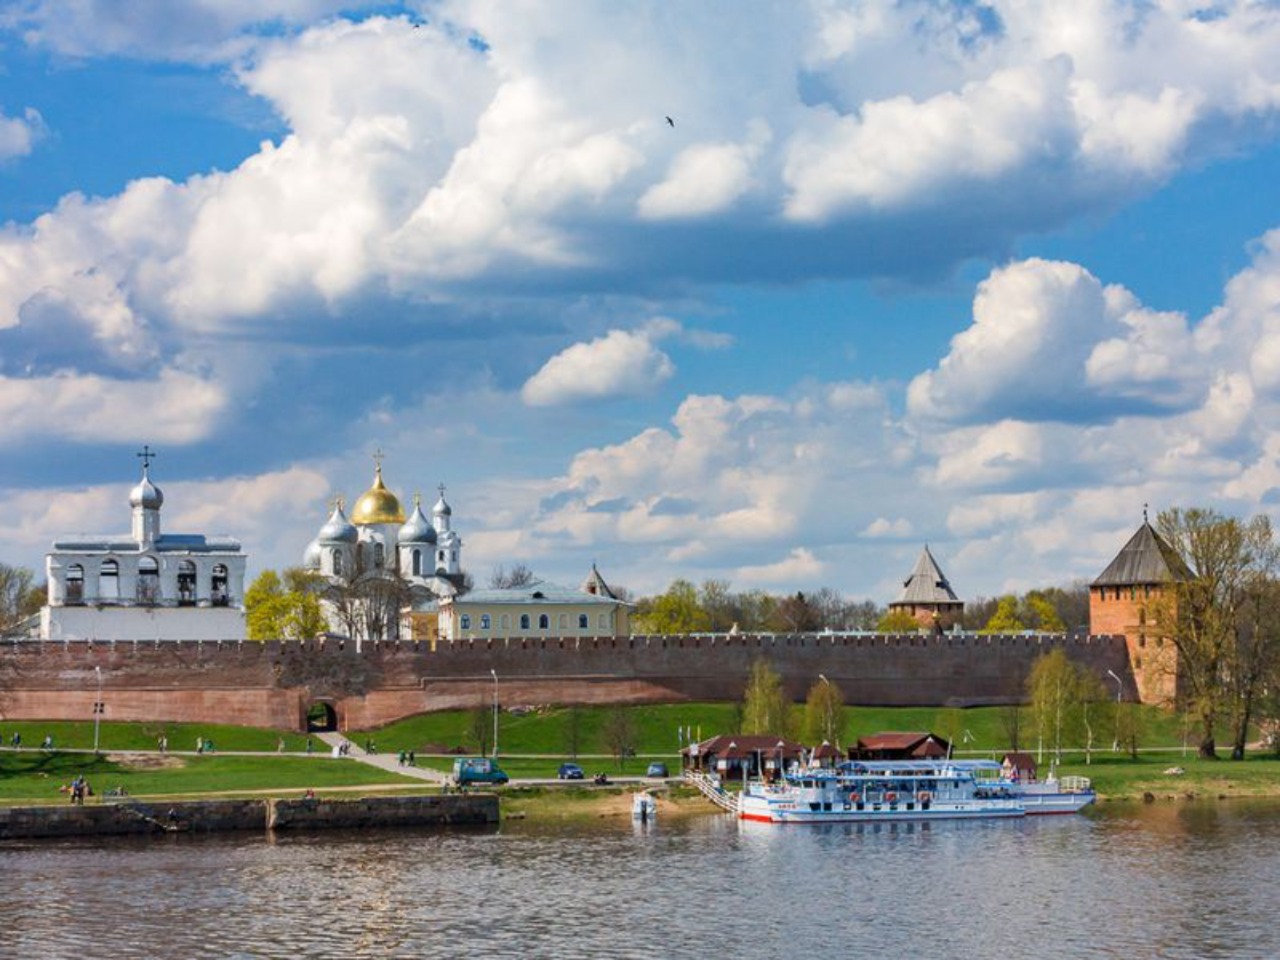 Великий Новгород в силе и славе | Цена 5260₽, отзывы, описание экскурсии